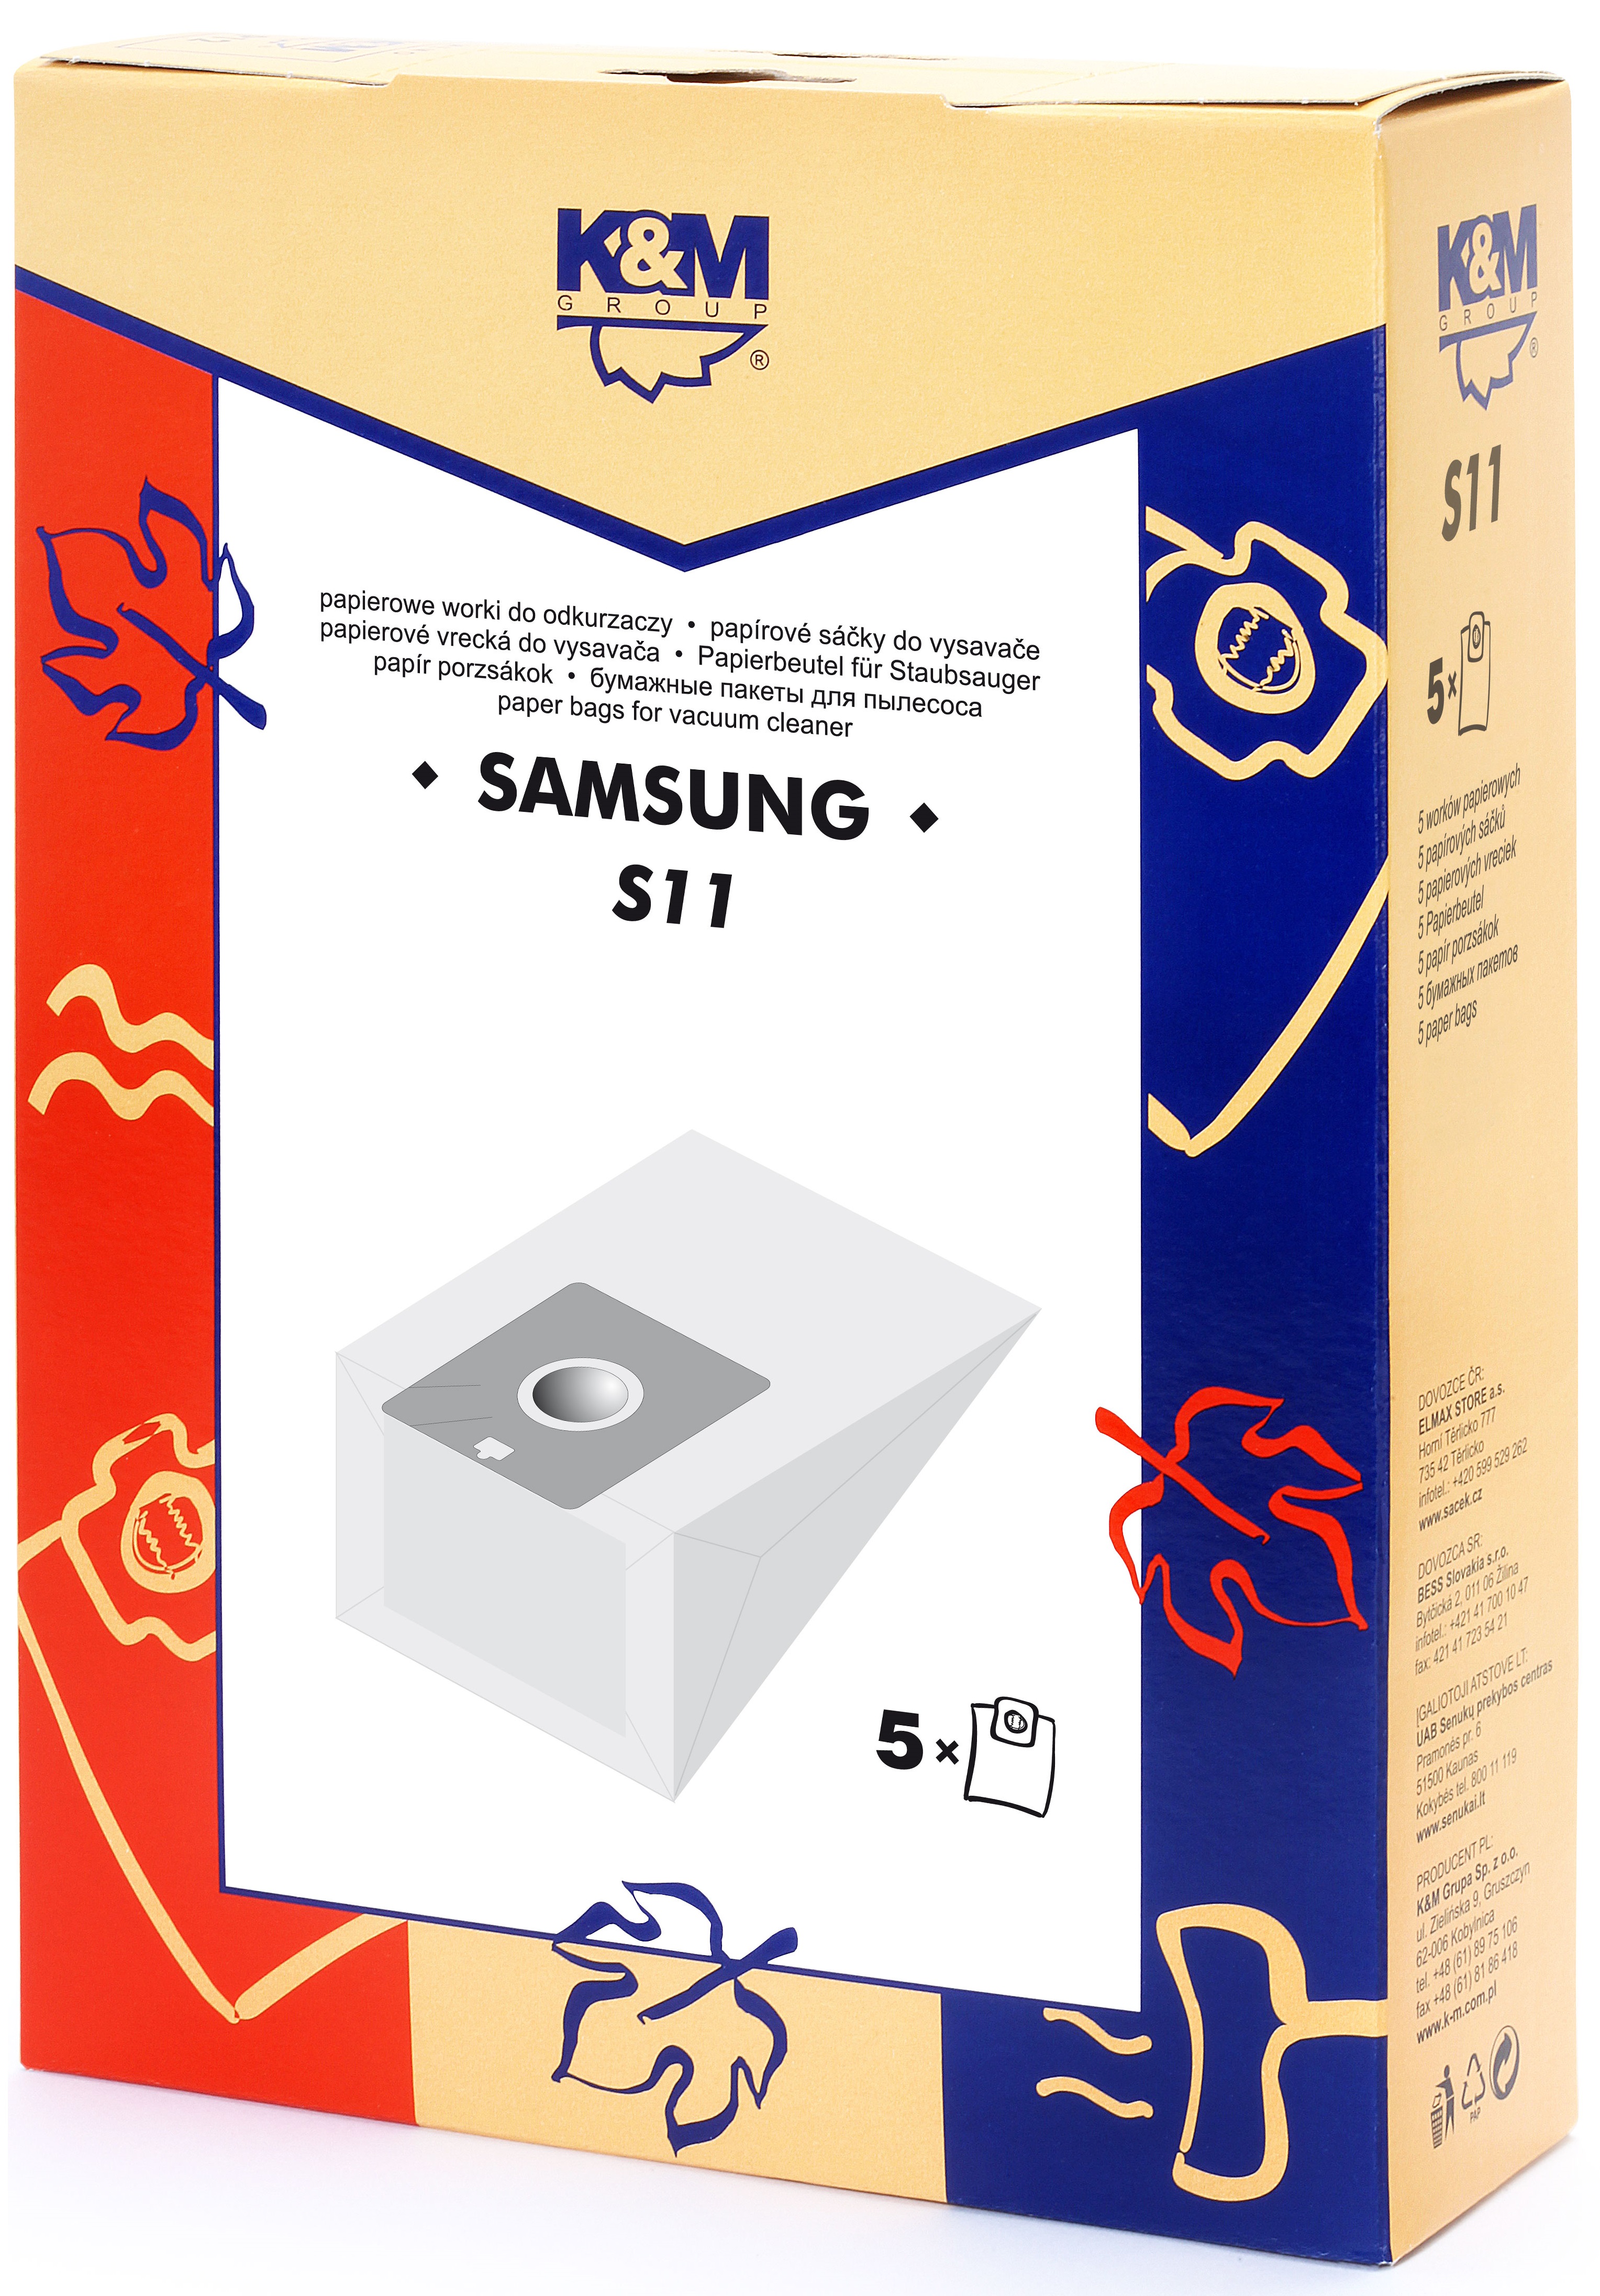 Sac aspirator Samsung VP77, hartie, 5X saci, K&M [1]